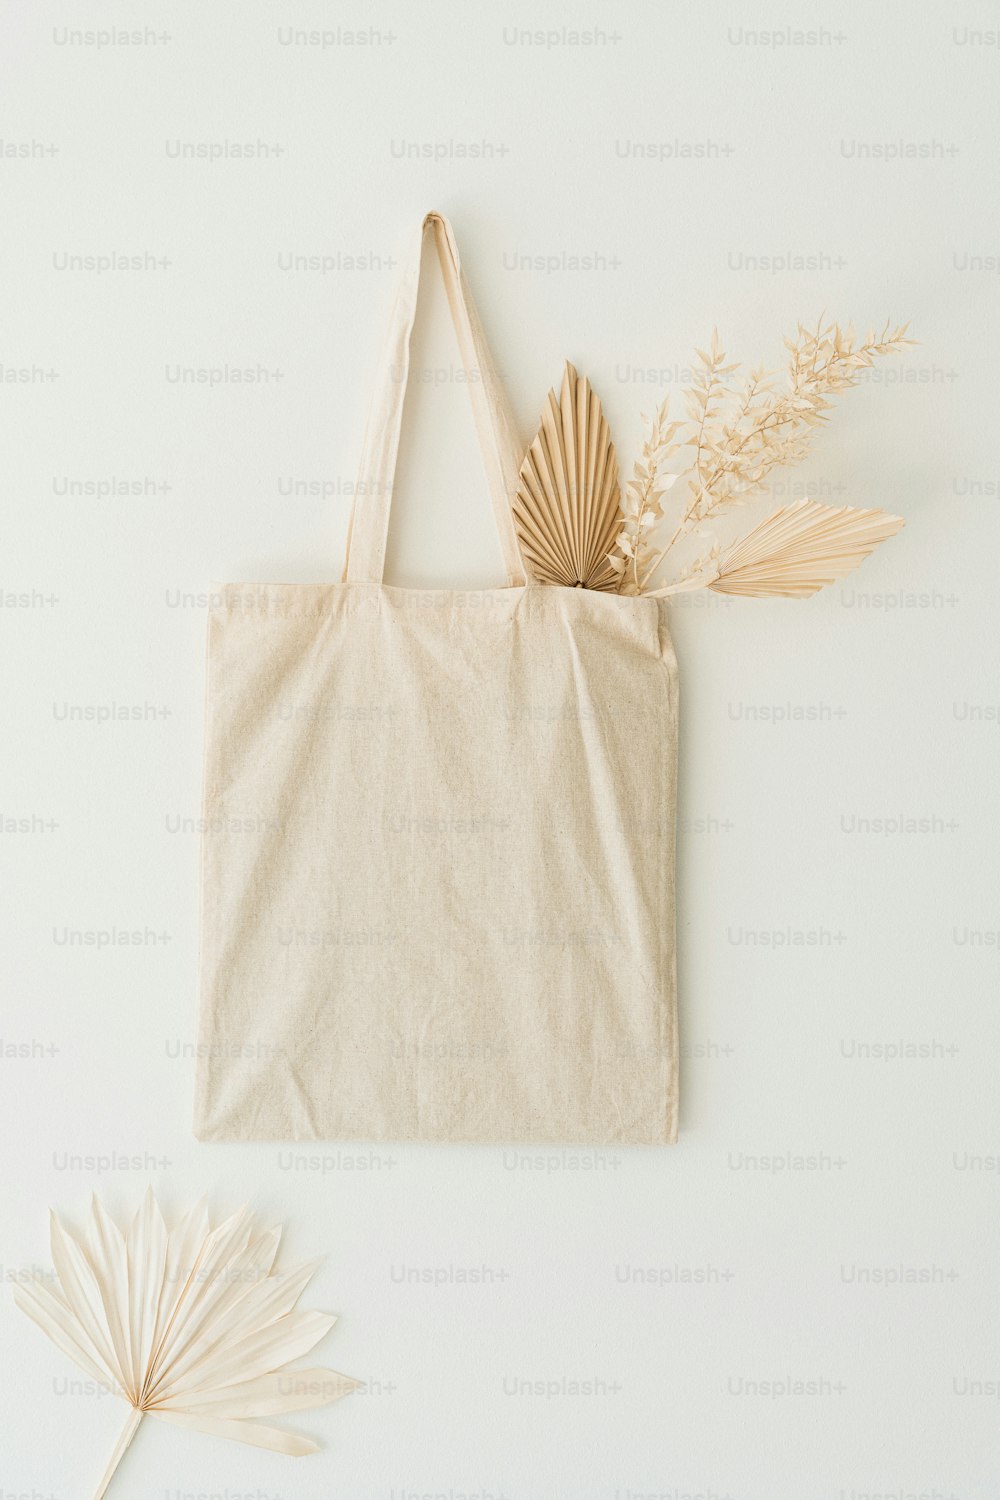 um saco de saco e uma folha de palmeira em um fundo branco